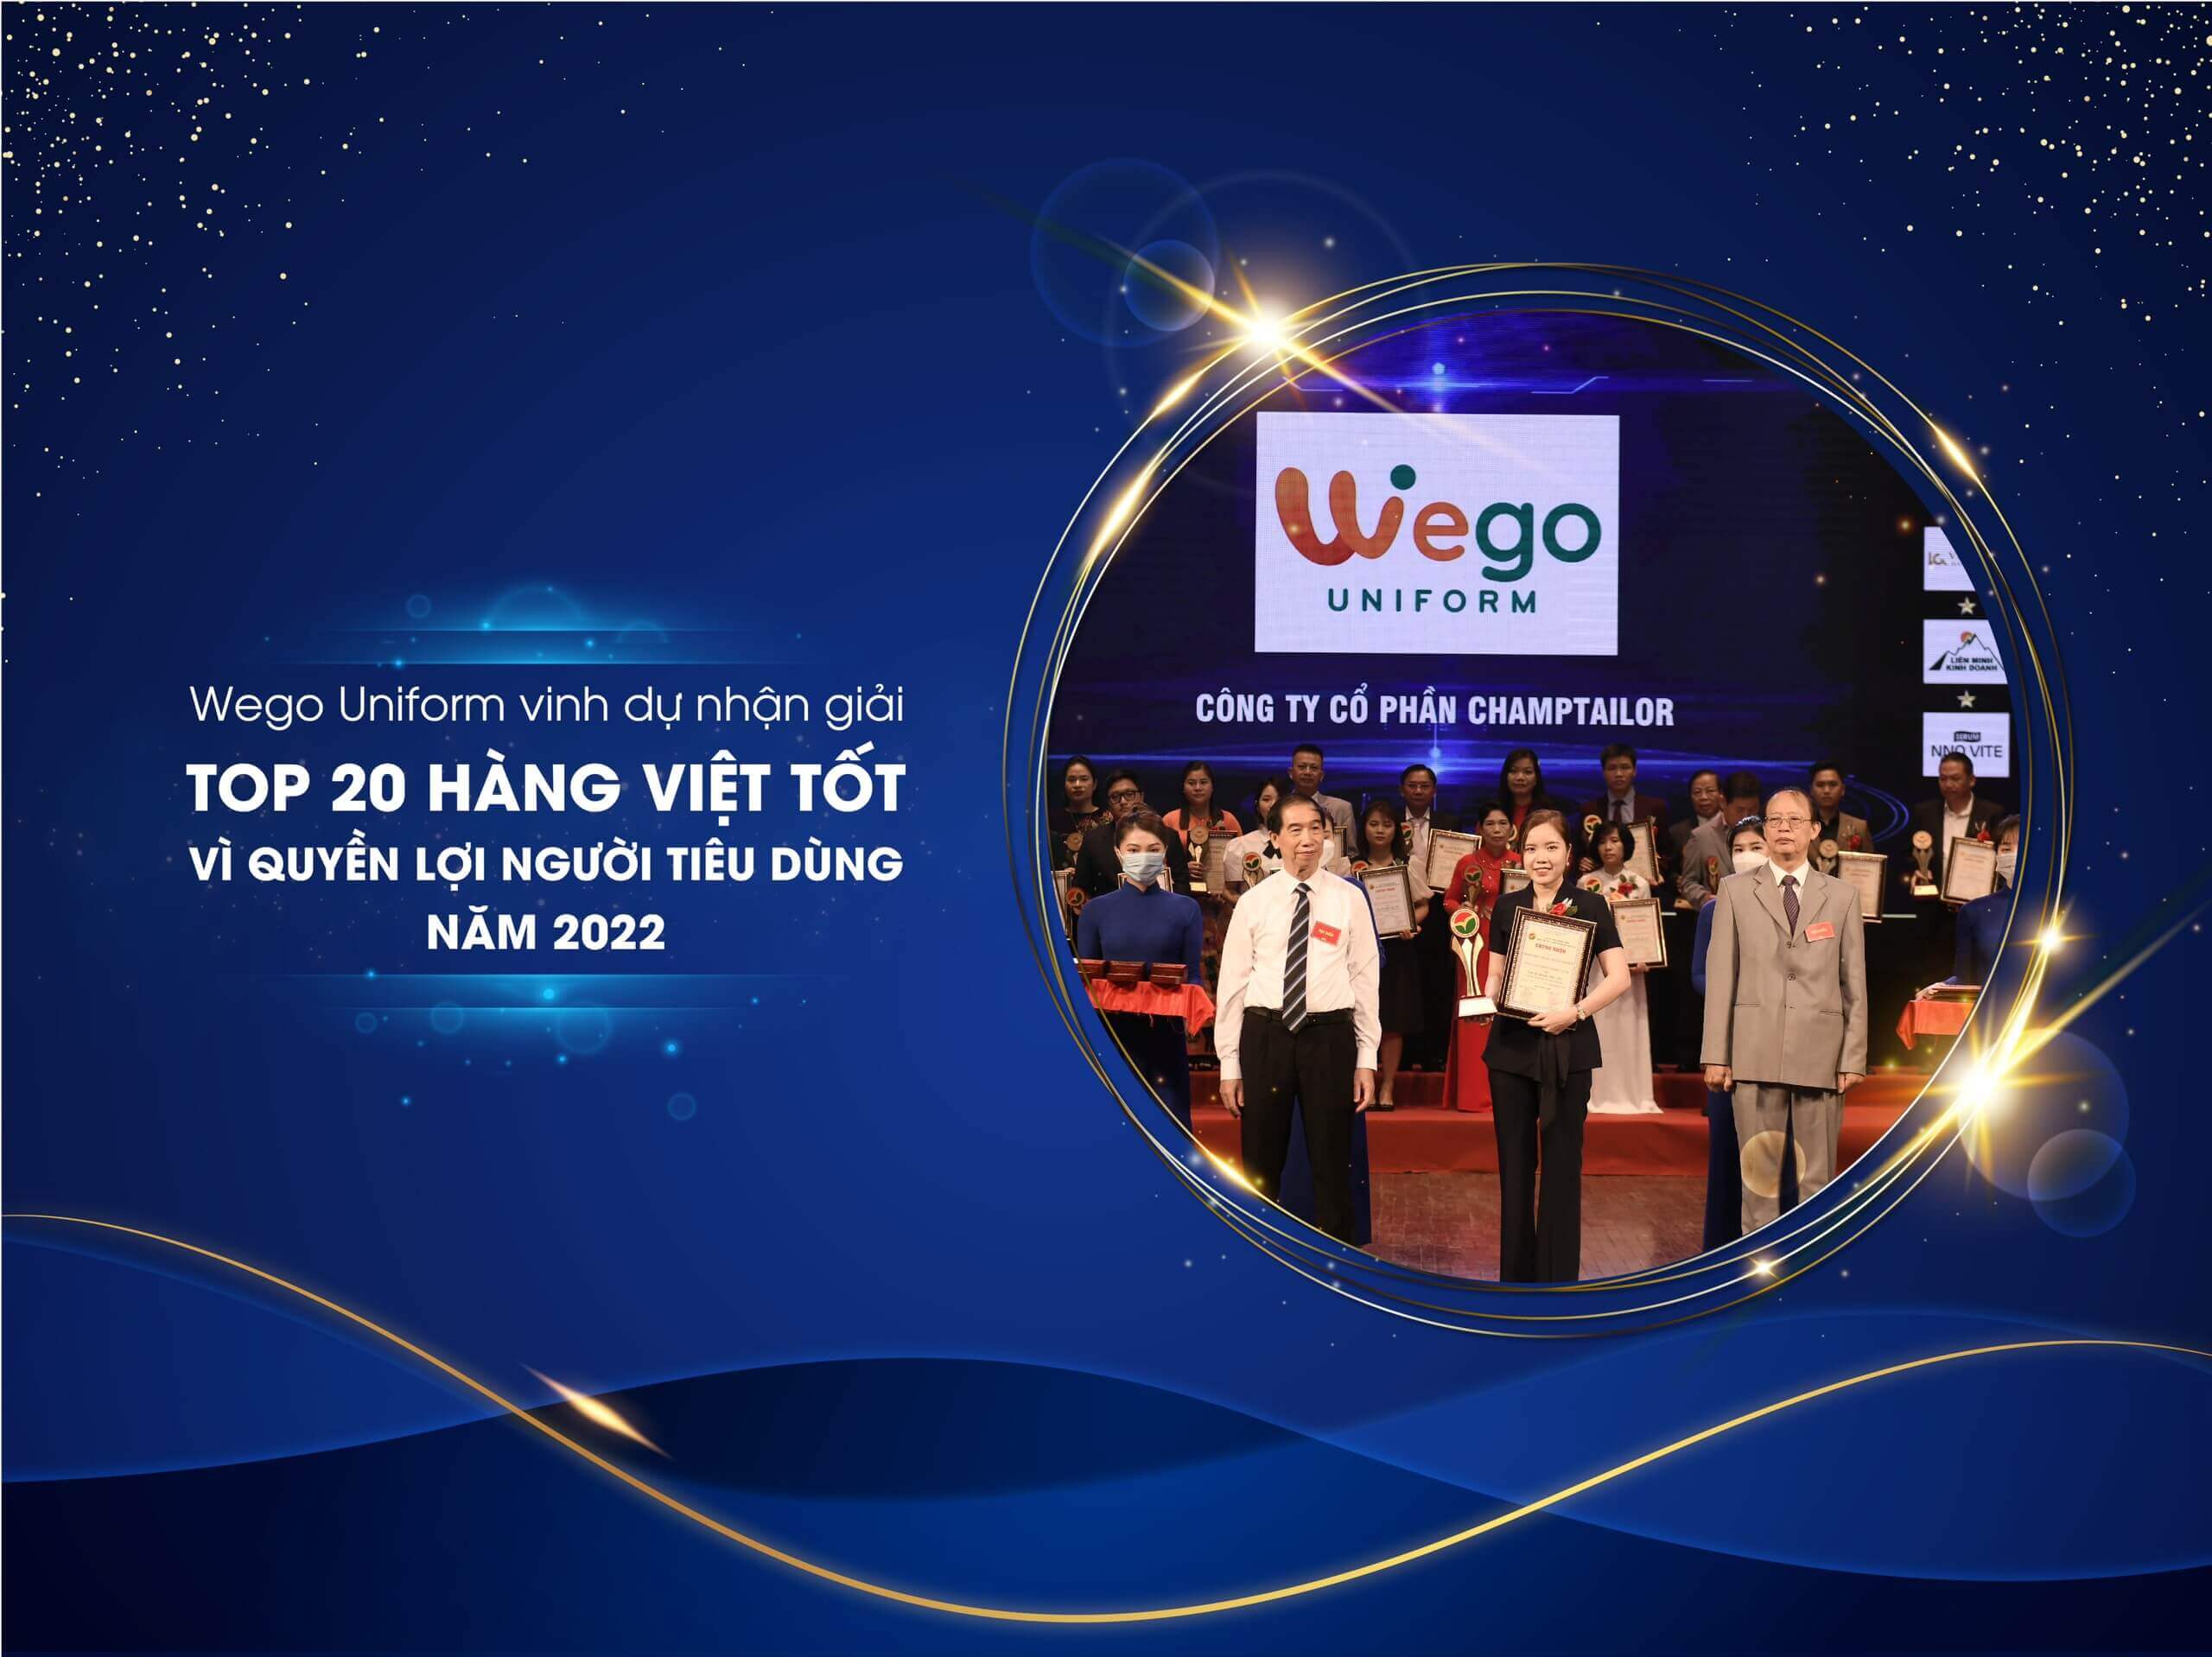 Wego Uniform nhận giải hàng việt tốt vì quyền lợi người tiêu dùng